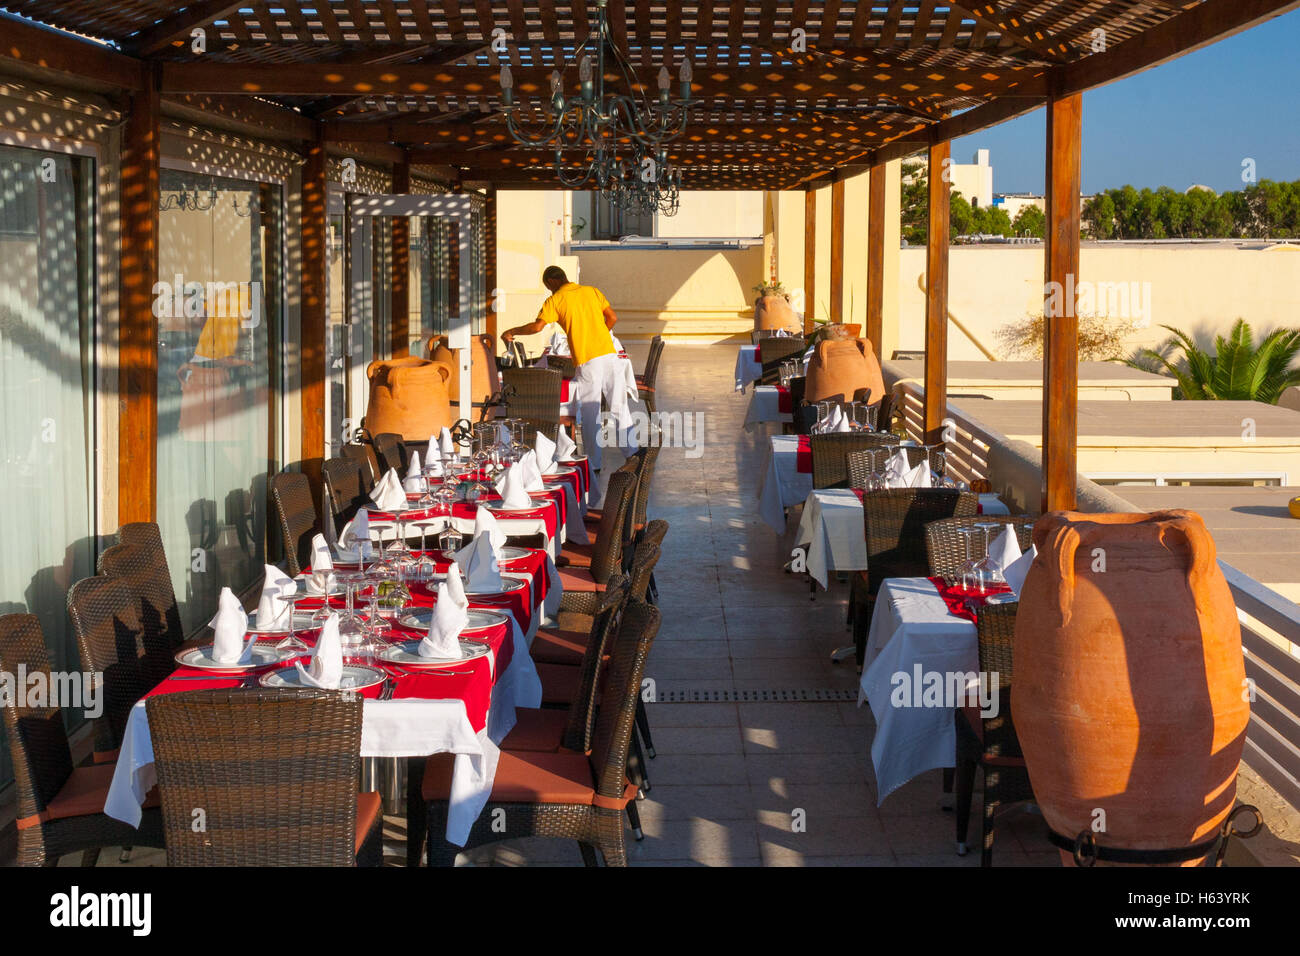 Cameriere posa di tabelle in un ristorante esterno veranda Foto Stock